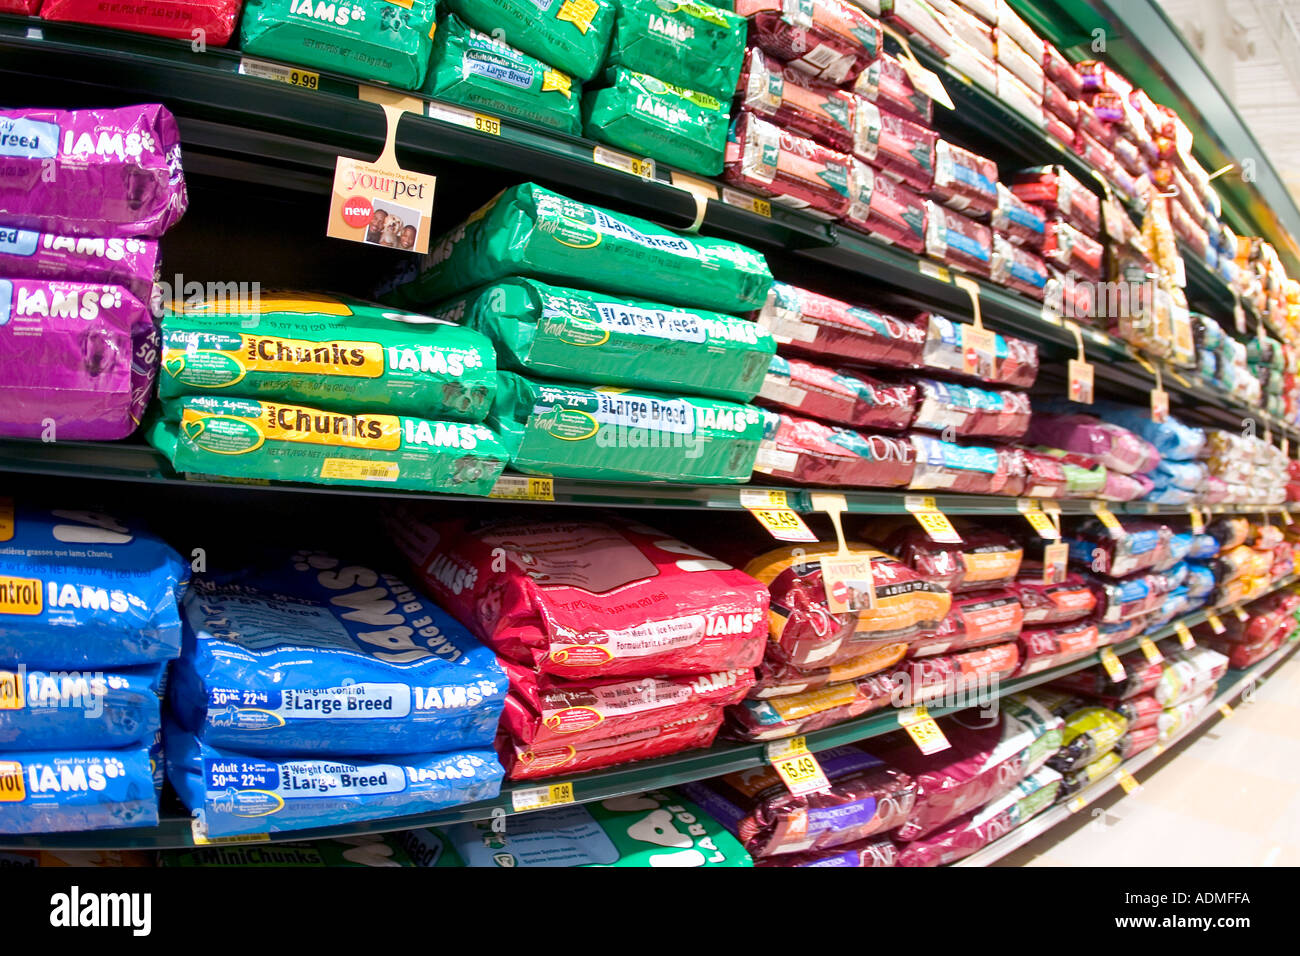 Dog food aisle of large American supermarket Stock Photo - Alamy